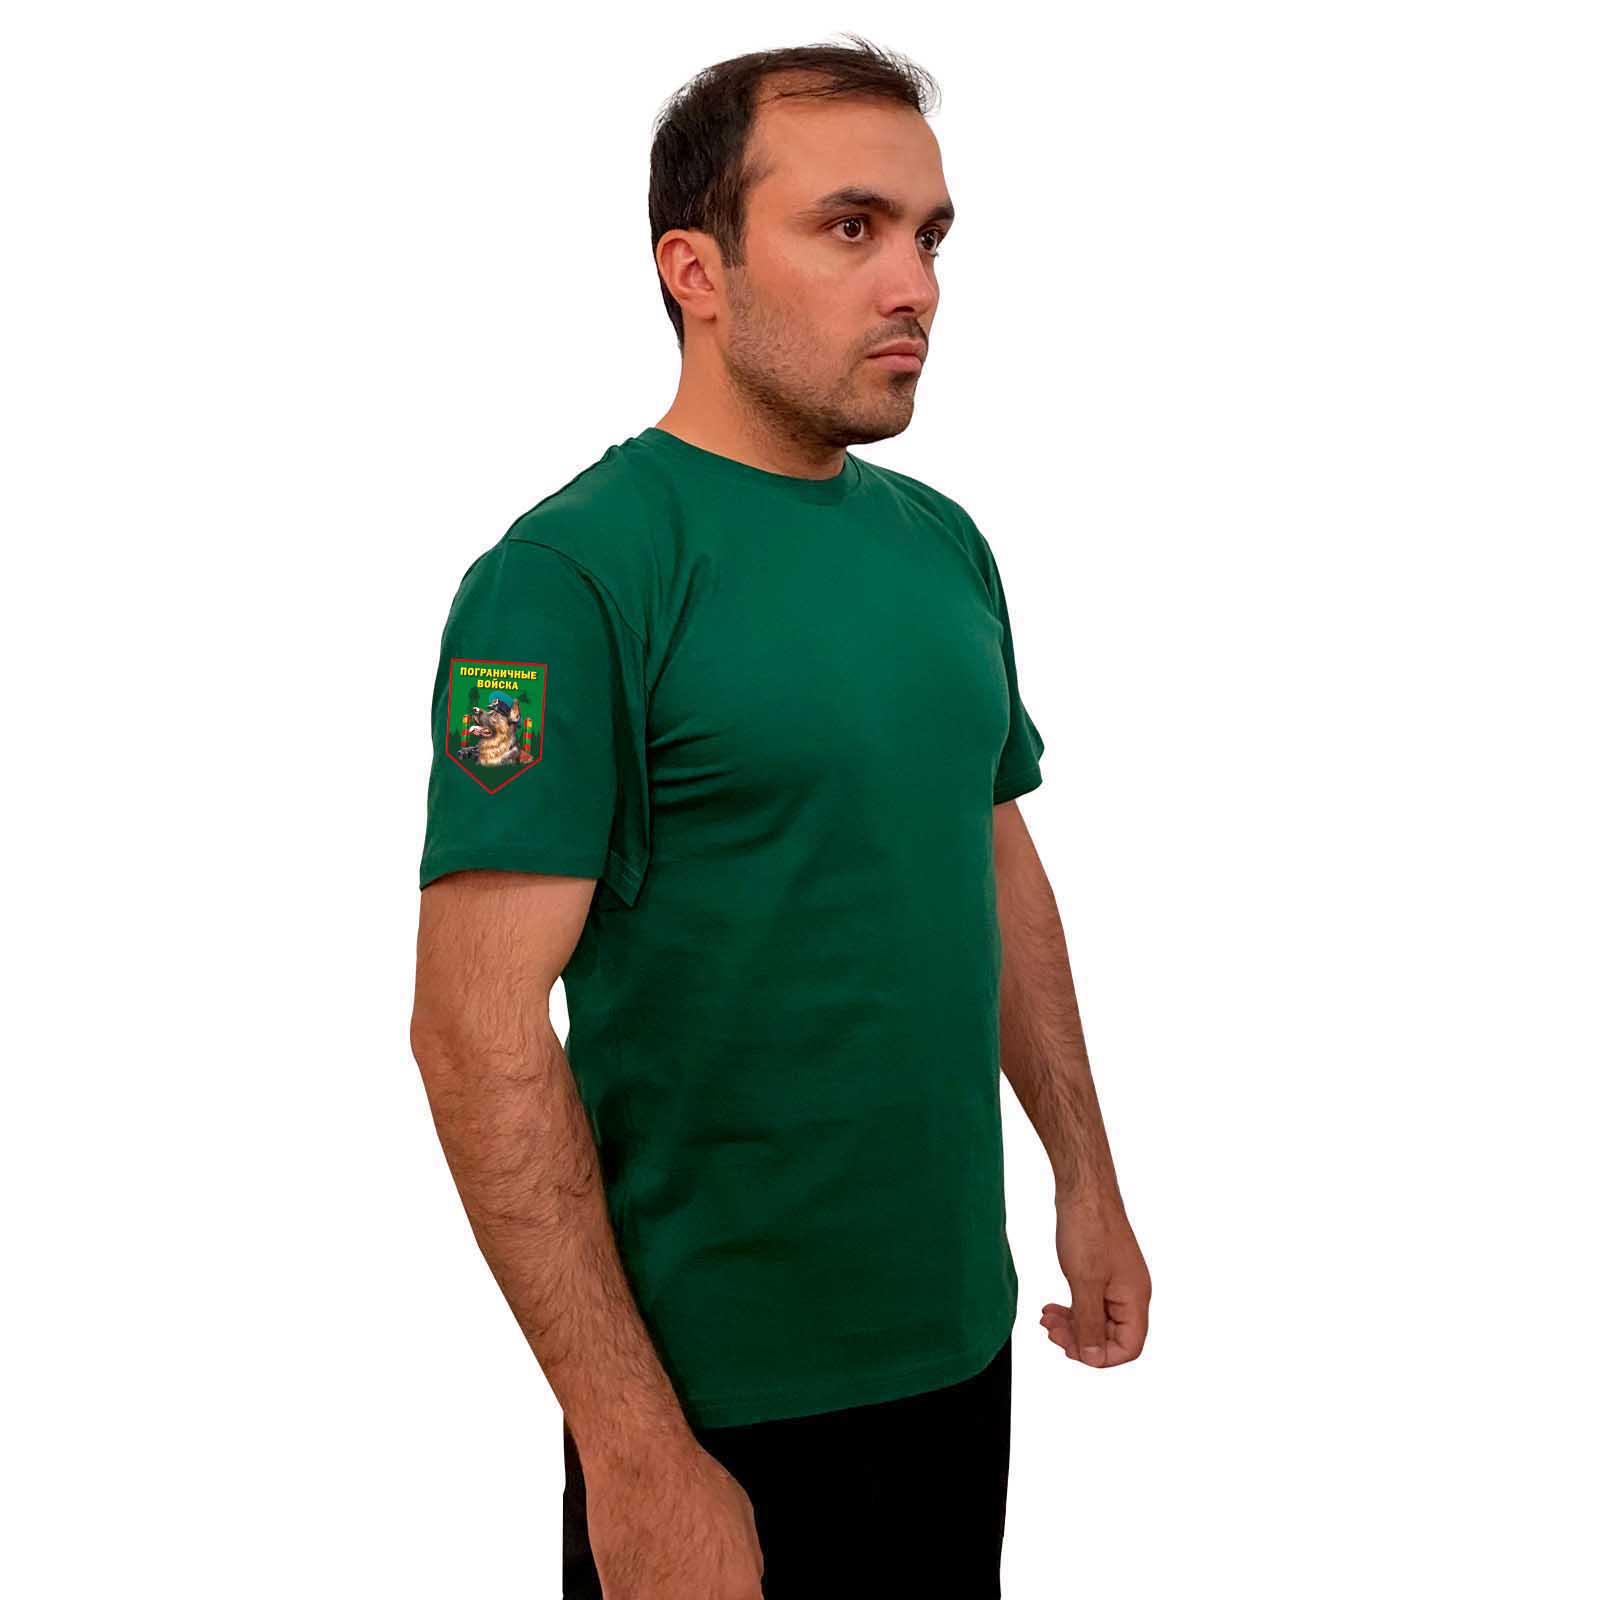 Зелёная футболка с термотрансфером "Пограничные войска" на рукаве